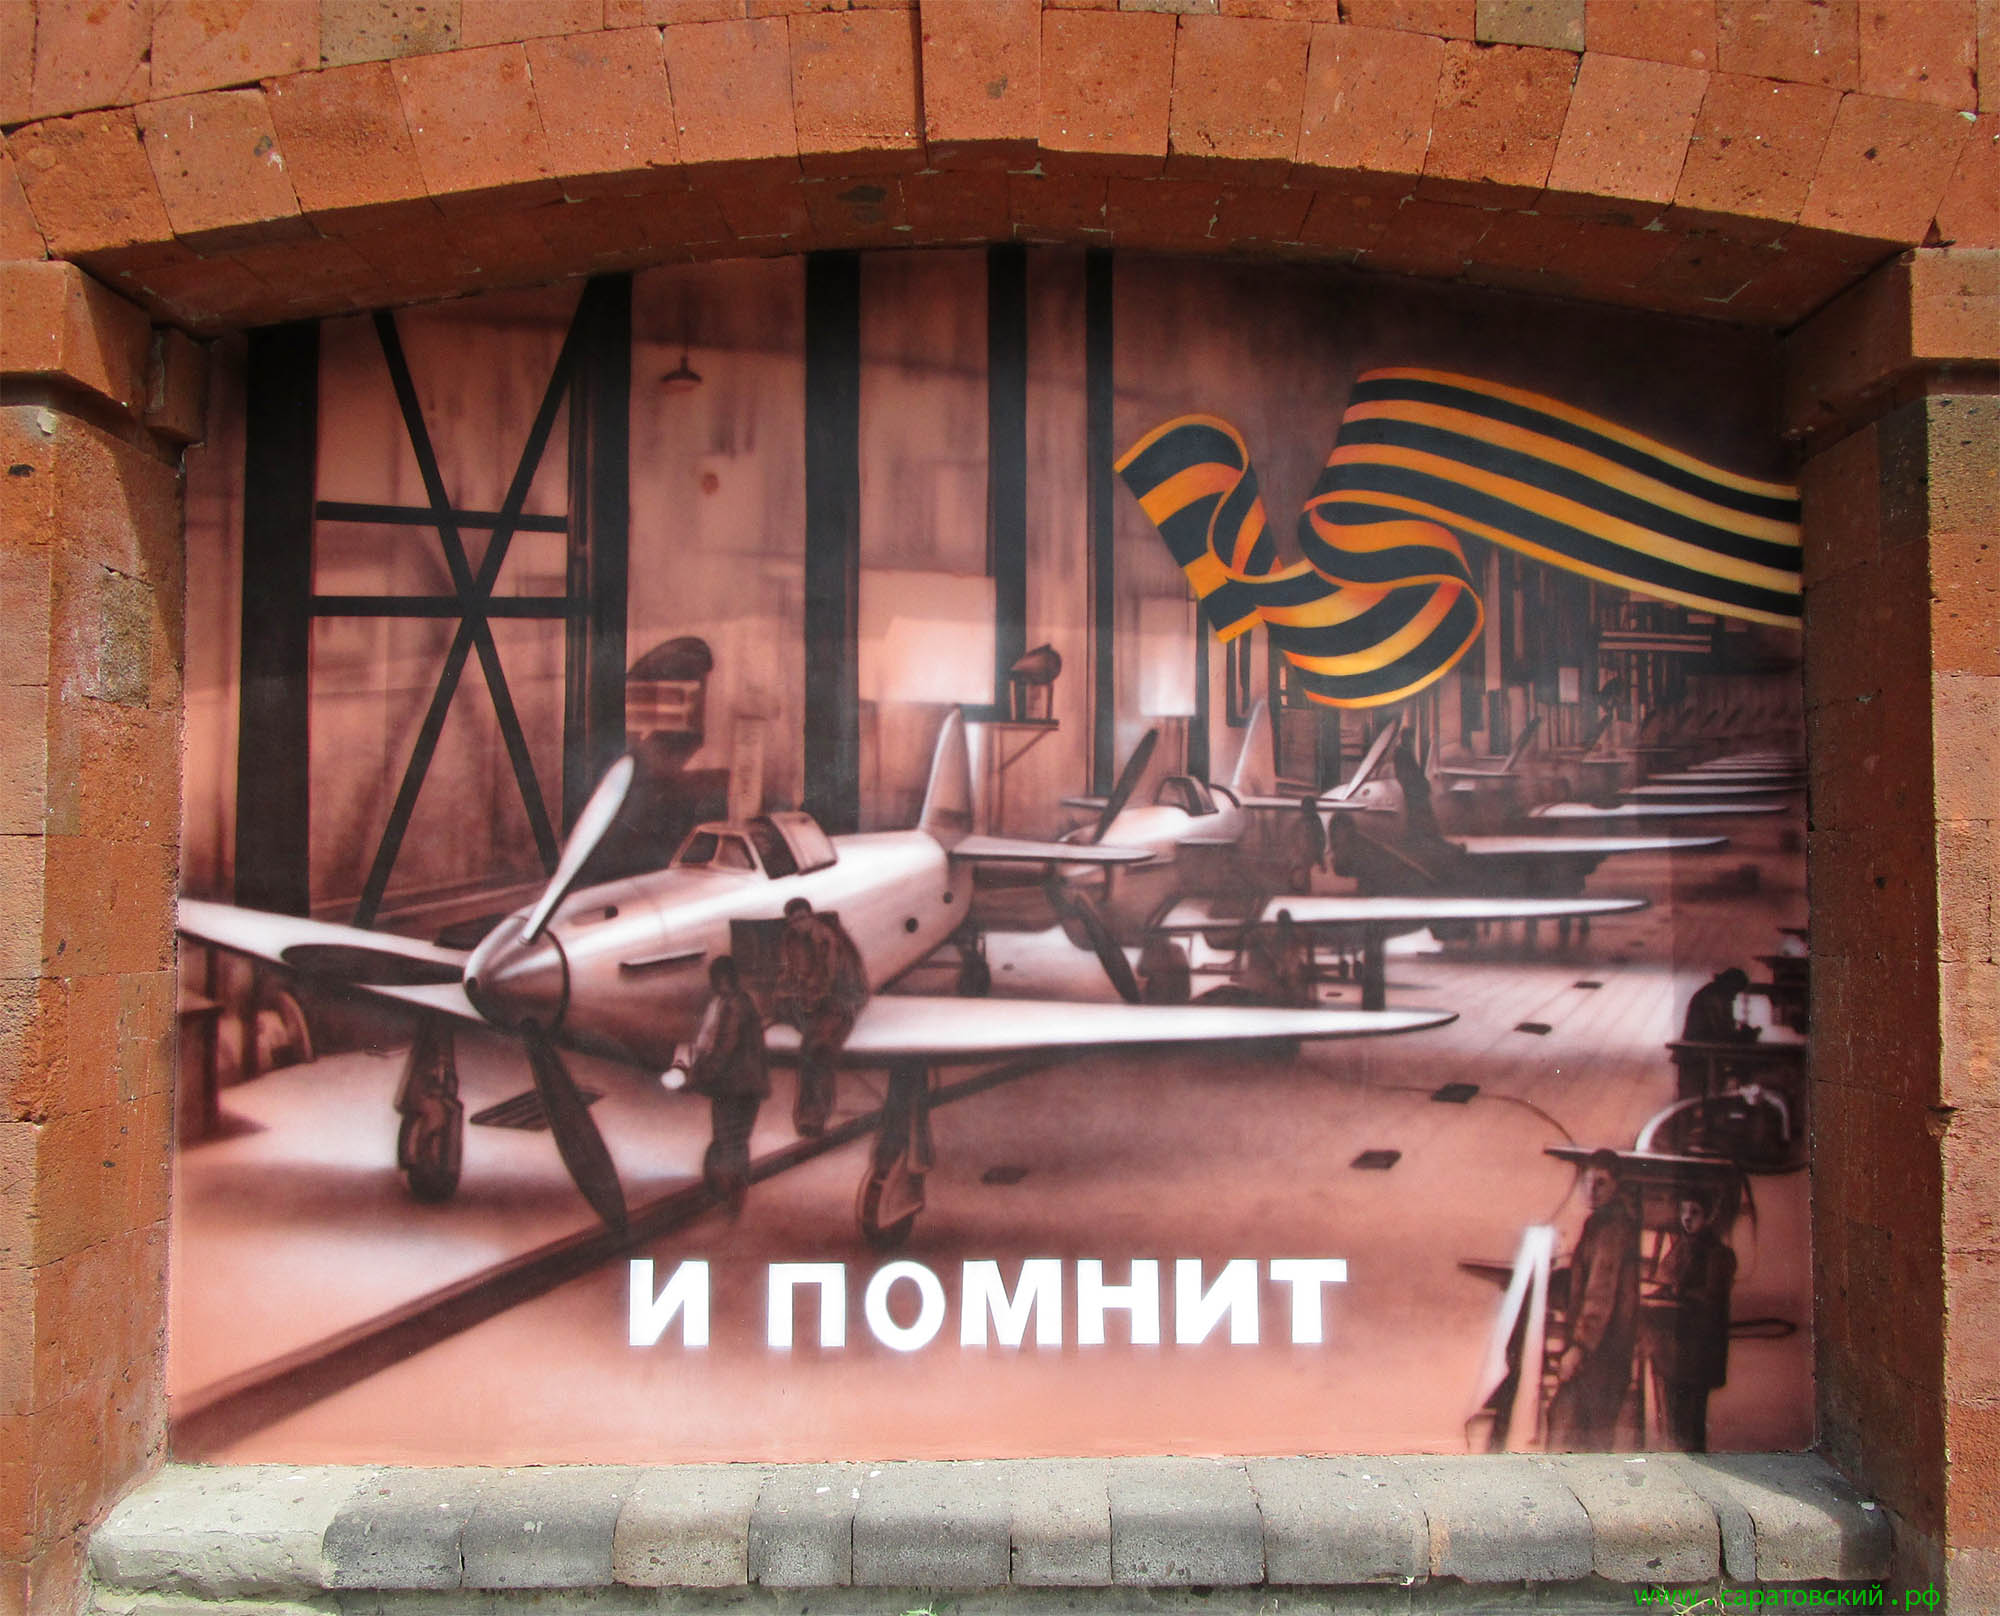 Саратовская набережная, граффити: один из цехов саратовского авиационного завода в годы Великой Отечественной войны